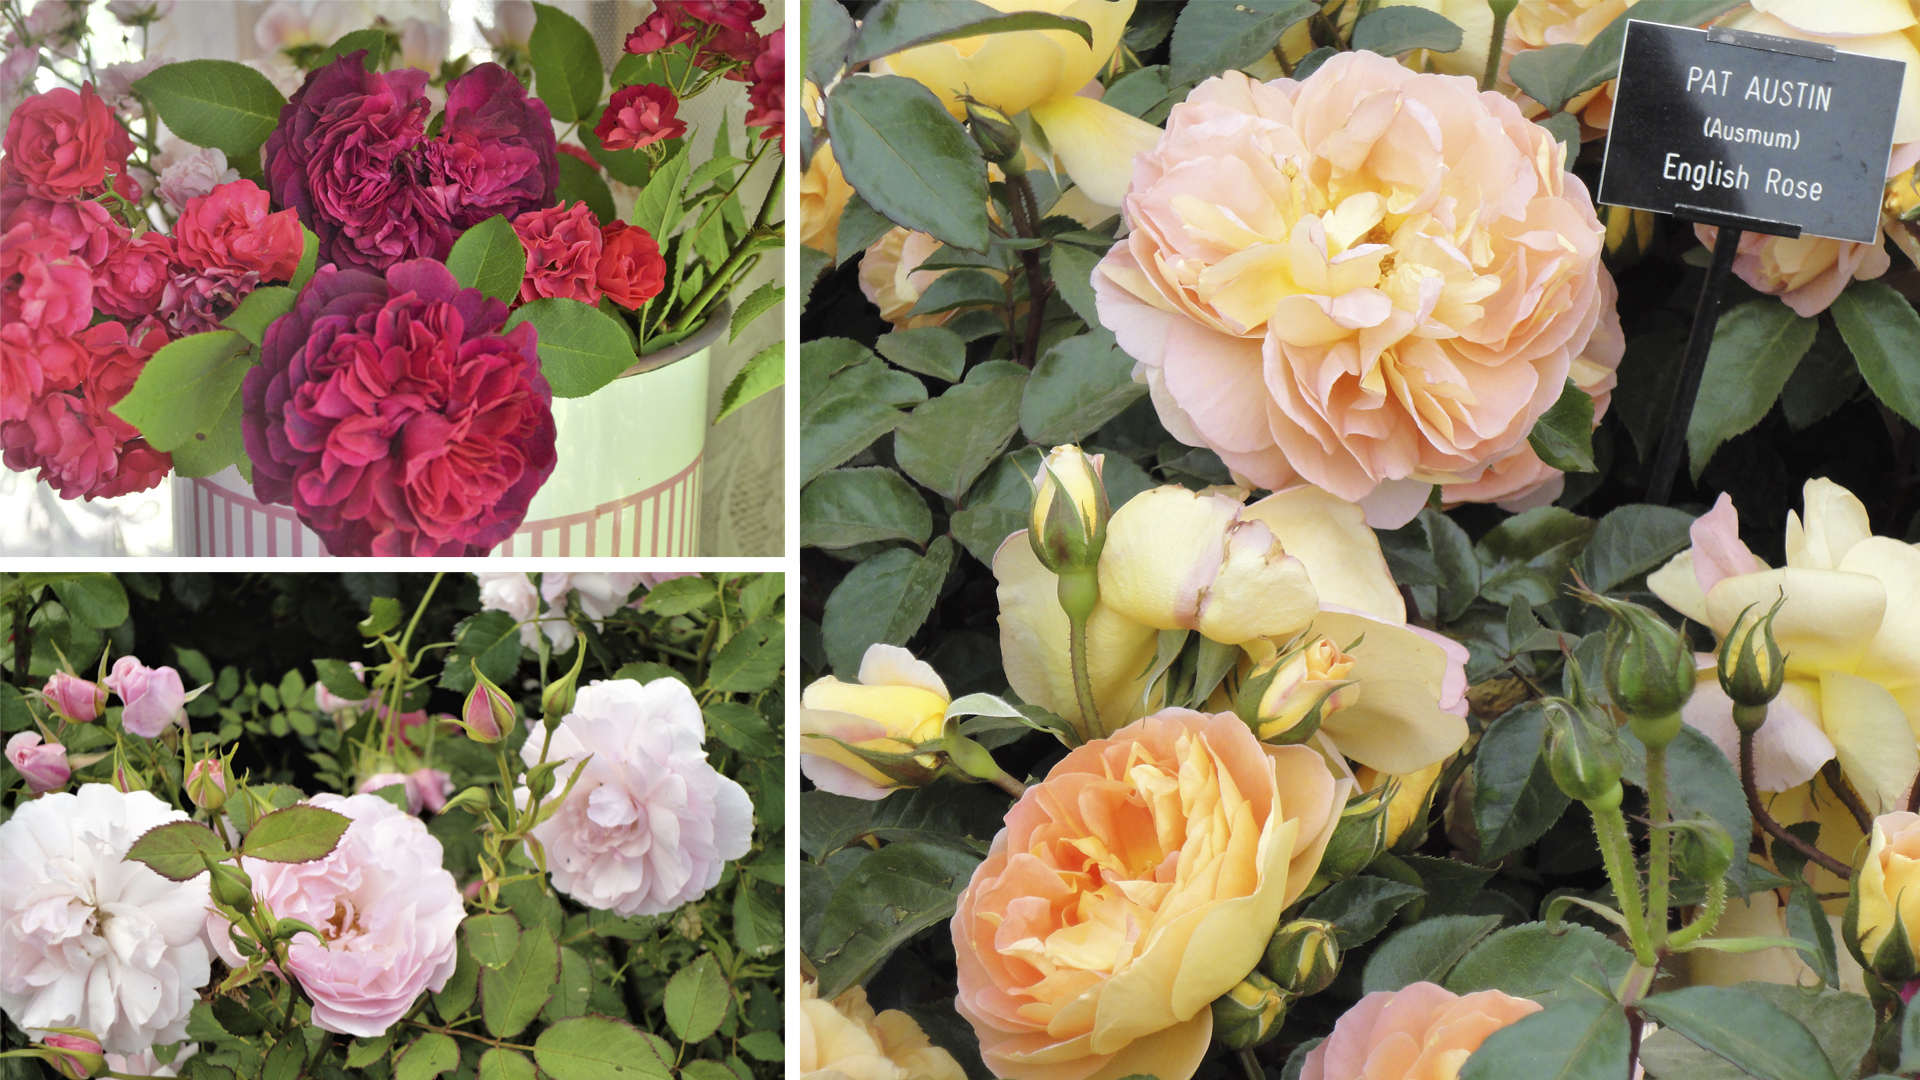 Слева вверху — одна из лучших пурпурных роз 'William Shakespeare 2000'; слева внизу — сорт 'Mary Rose', один из первых в линейке английских роз. Справа — сорт 'Pat Austin', назван в честь жены оригинатора